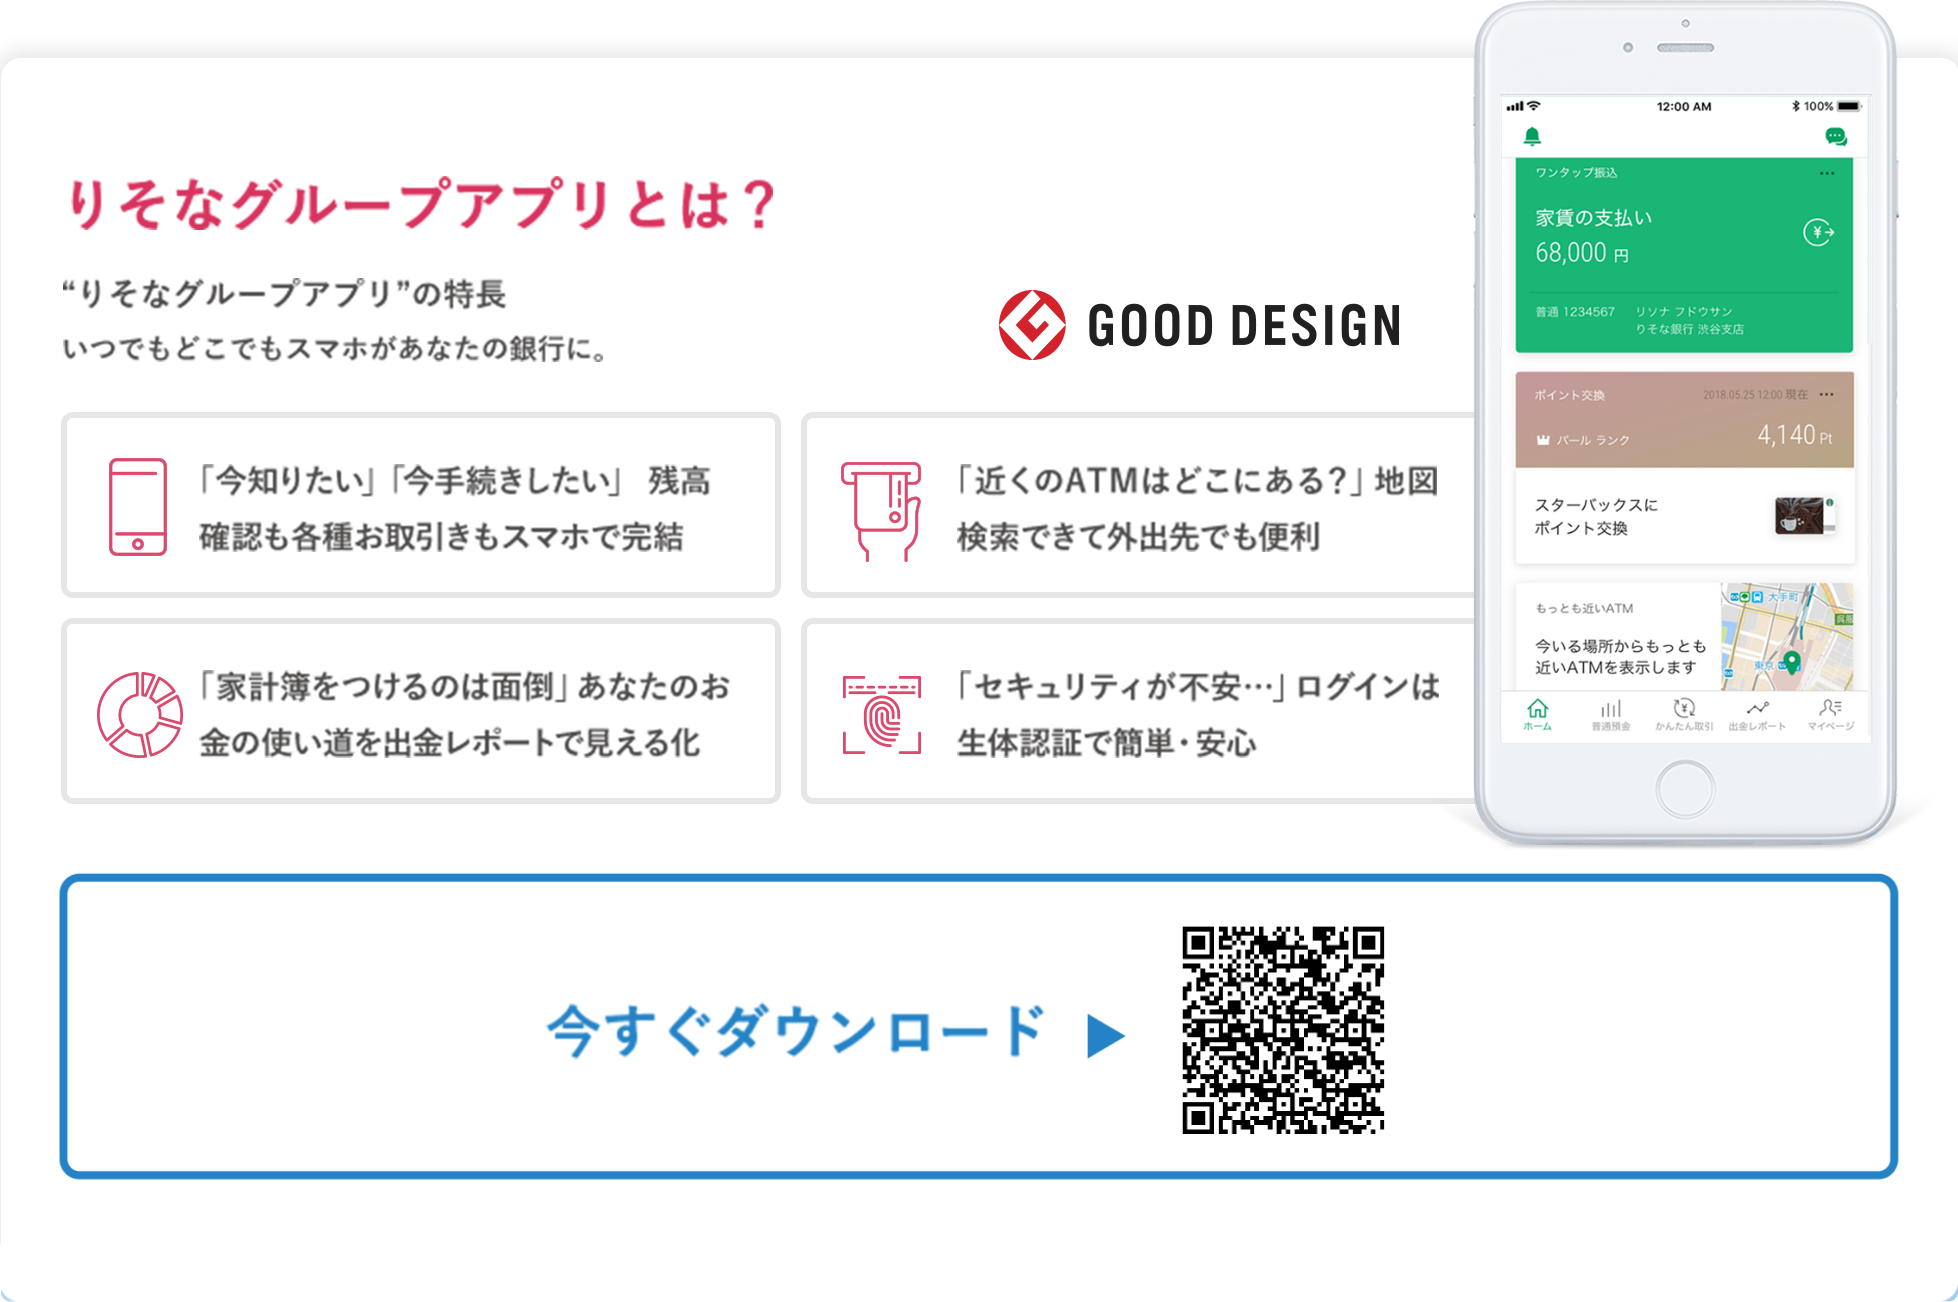 【ロゴ】スターバックス　りそなグループアプリの特徴